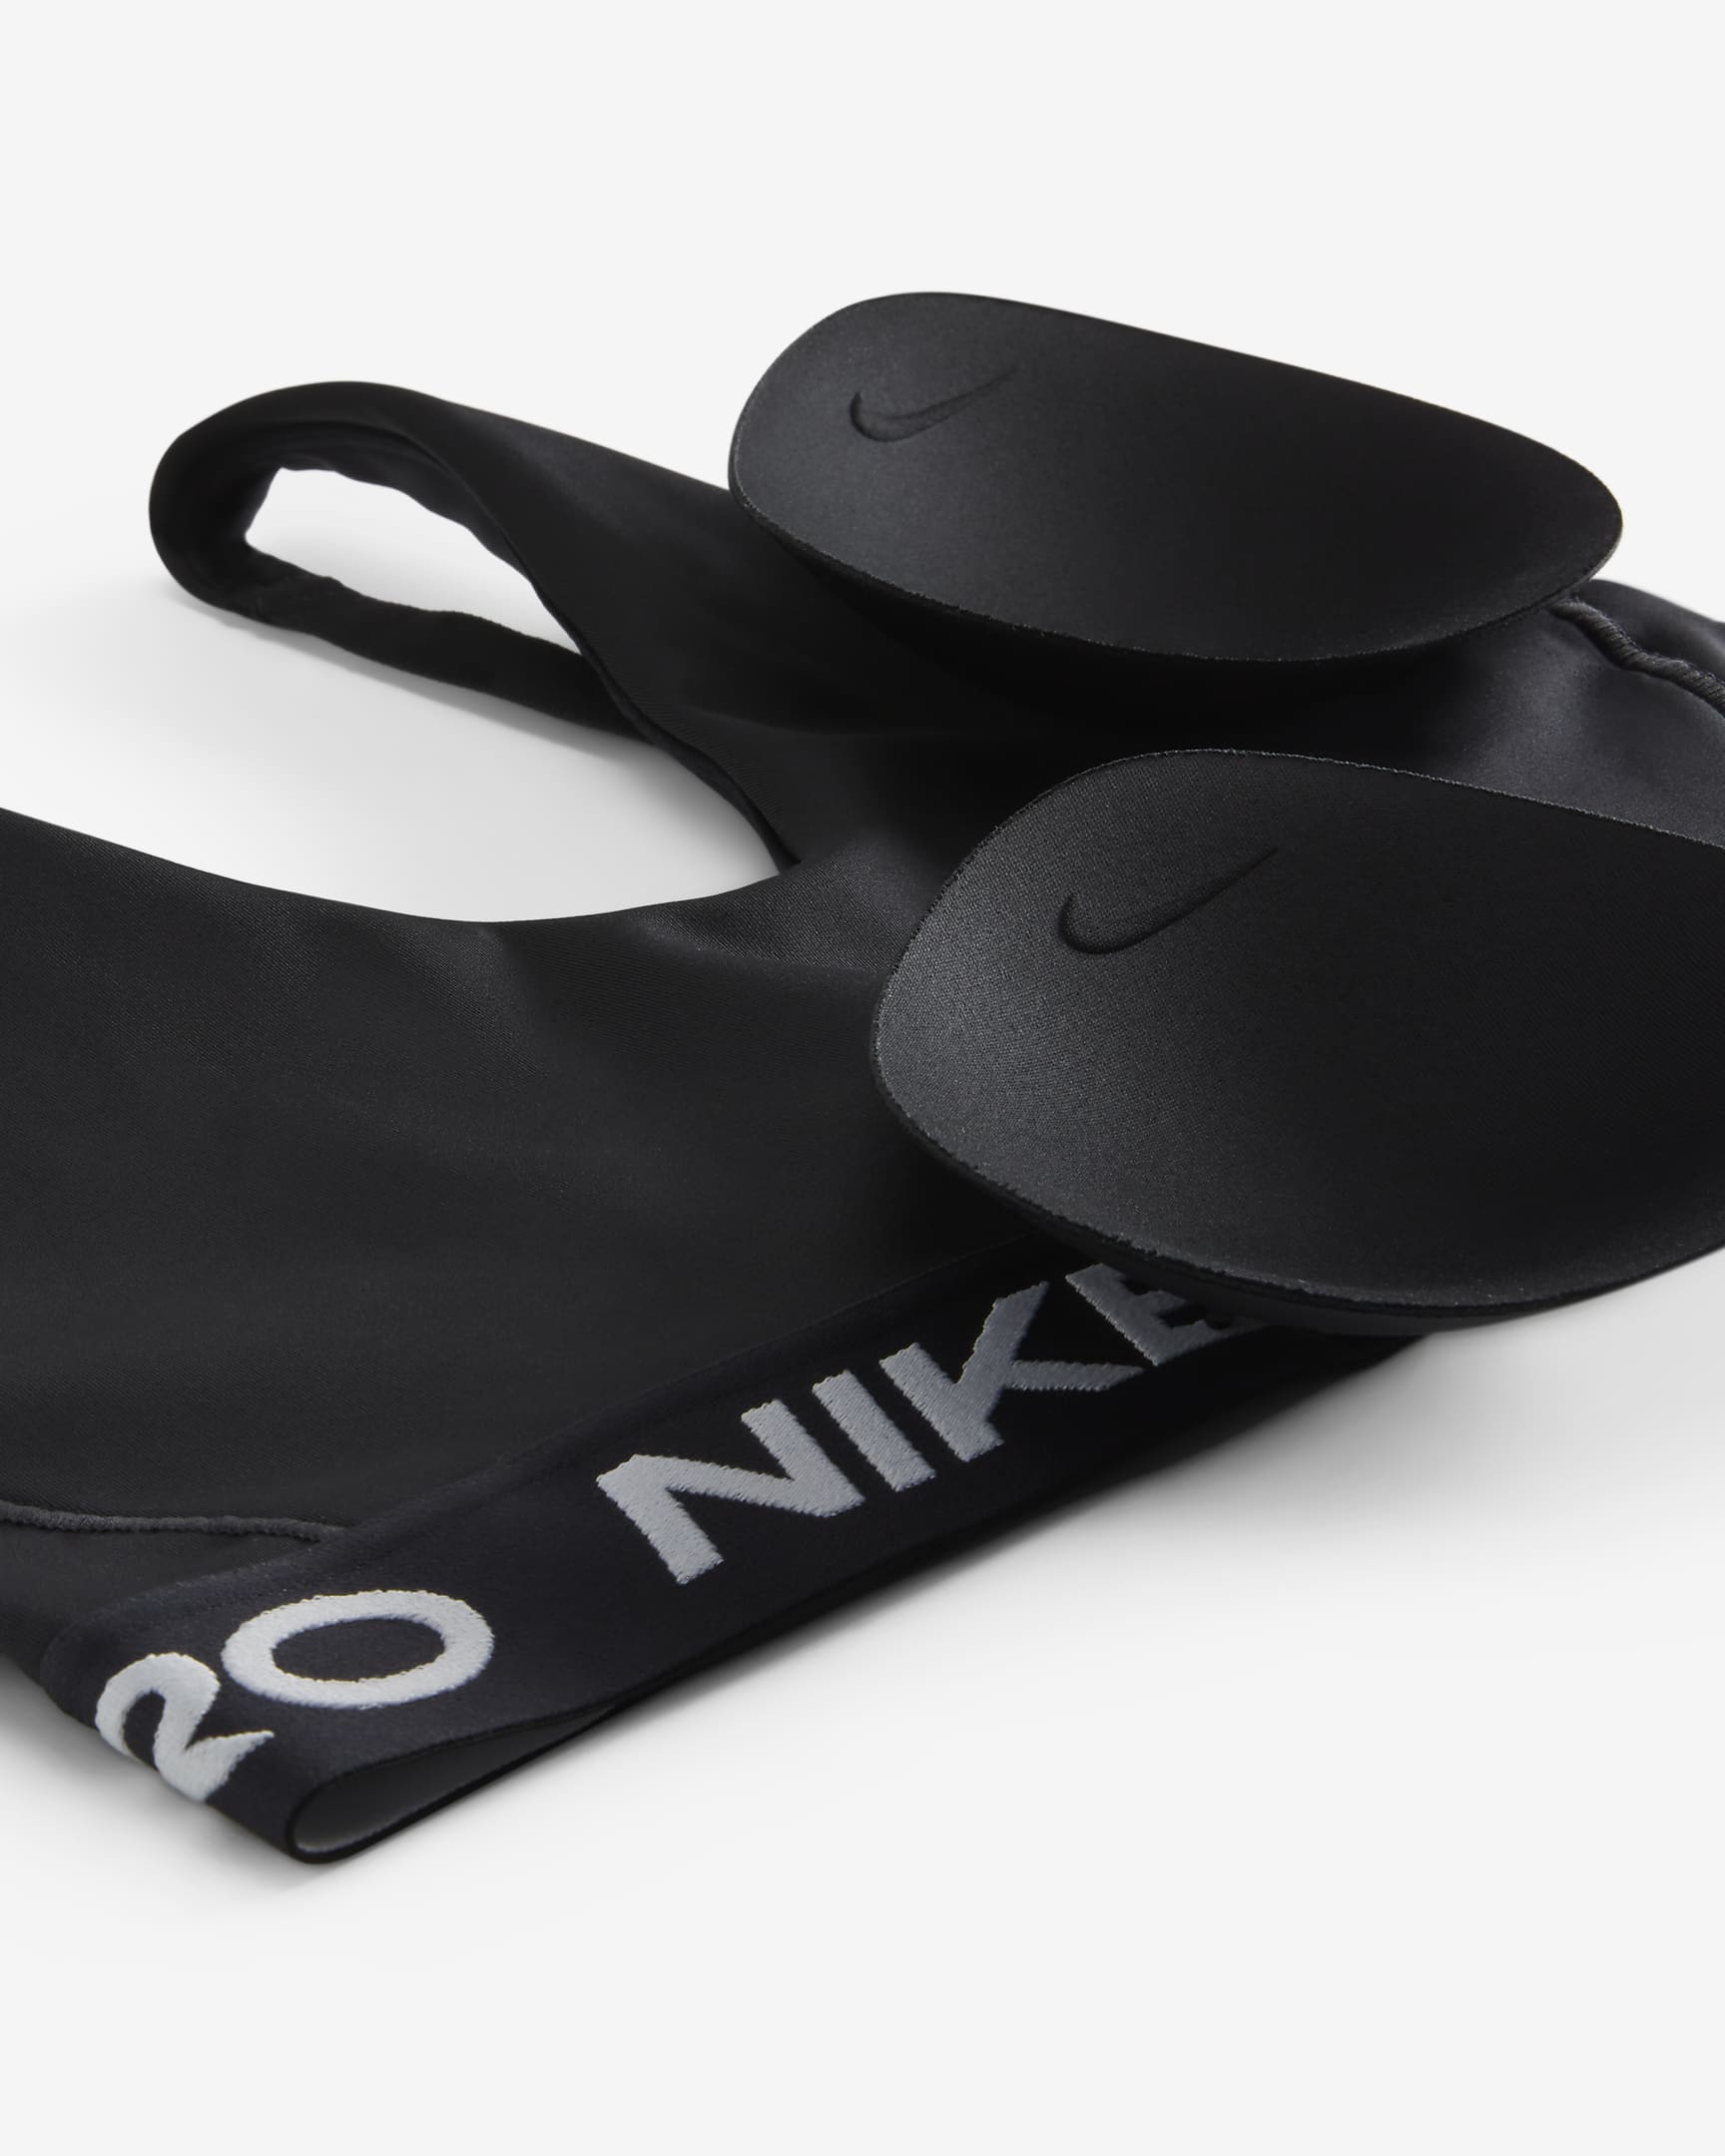 Dámská sportovní podprsenka Nike Pro Indy Plunge s vycpávkami a střední oporou - Černá/Bílá/Bílá